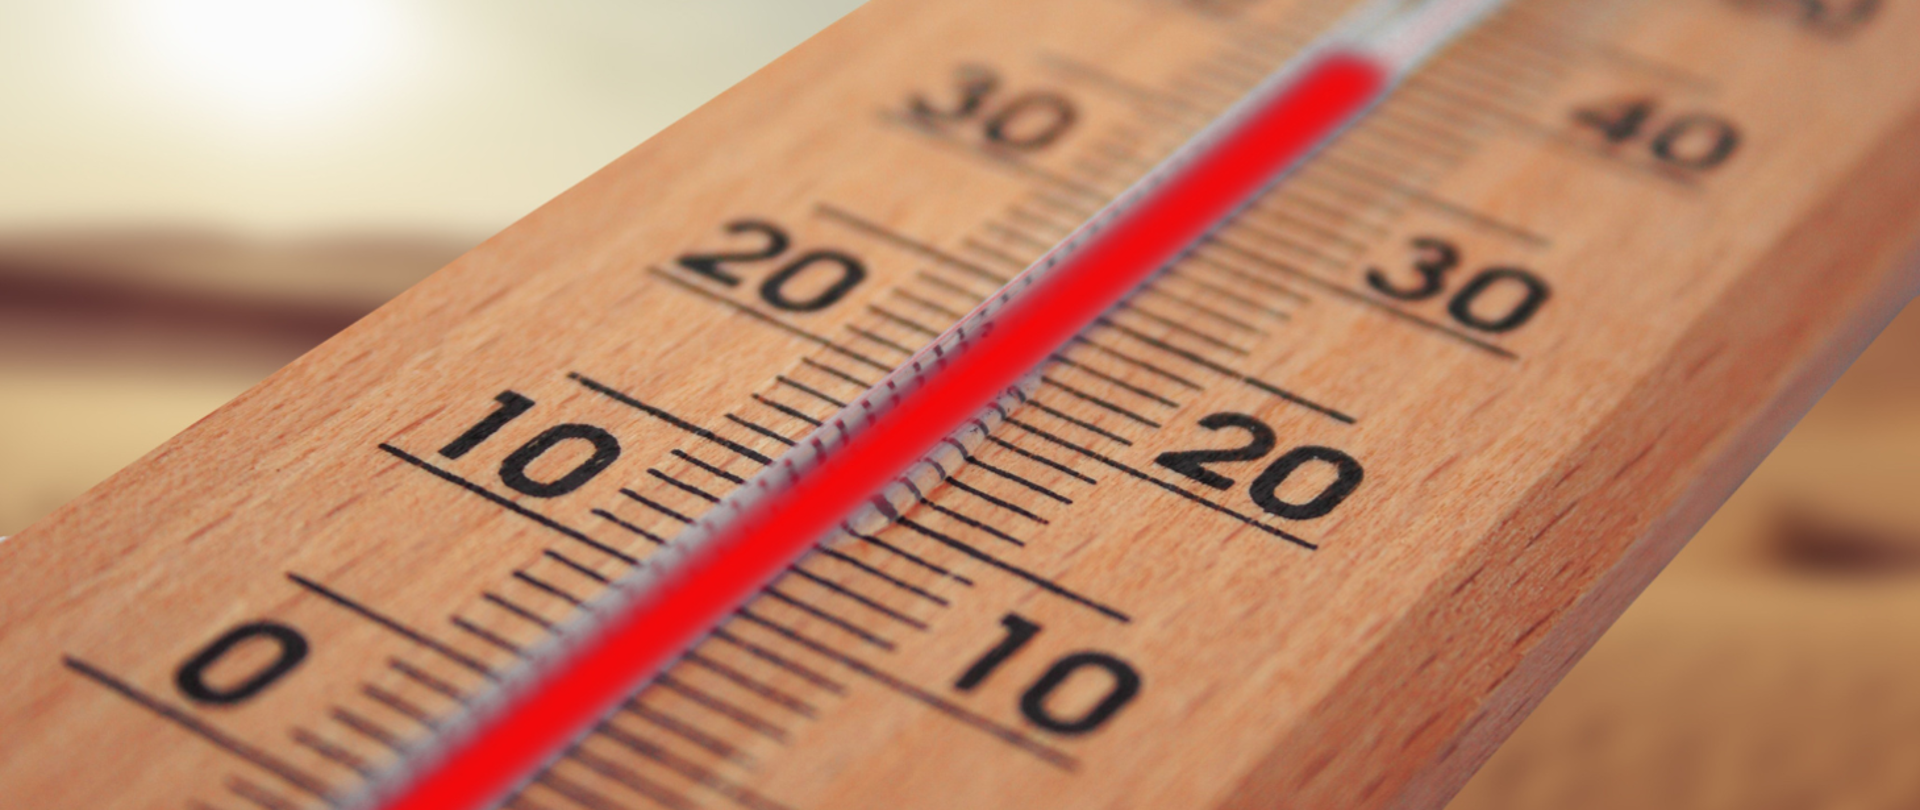 zdjęcie przedstawiające termometr ze słupkiem rtęci wskazującym prawie 40st C.